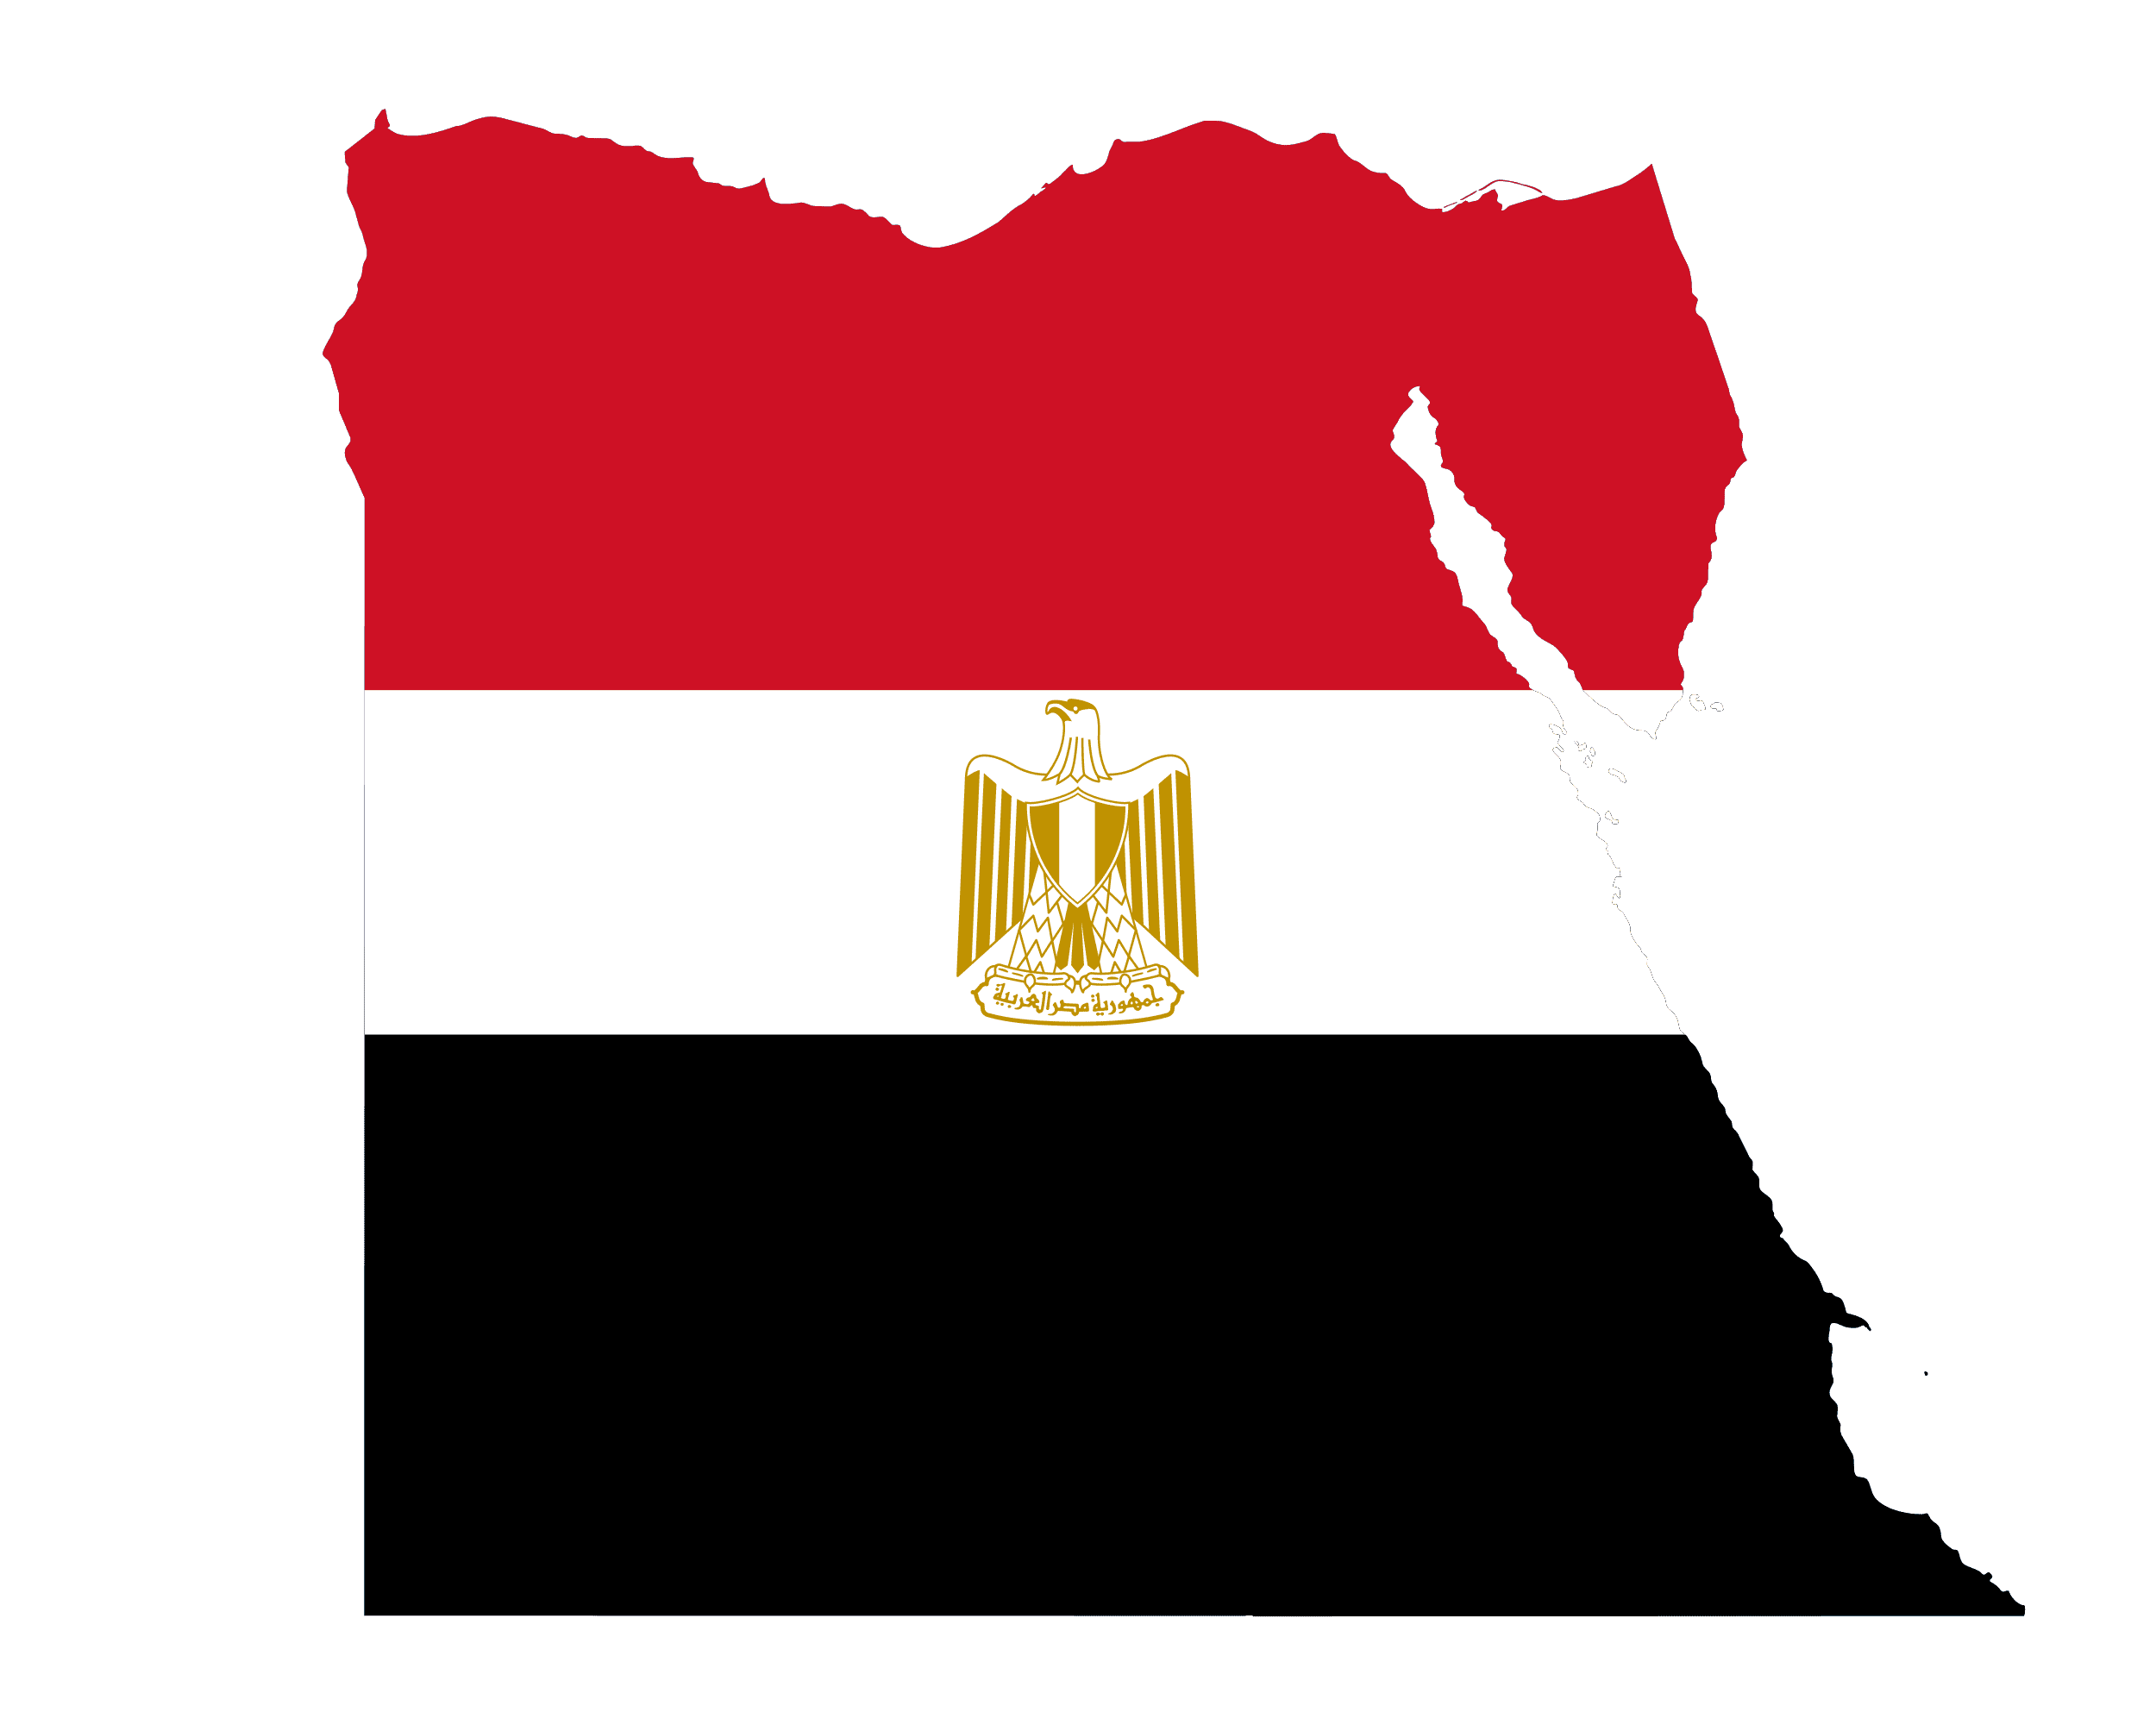 پرچم مصر با طرح نقشه